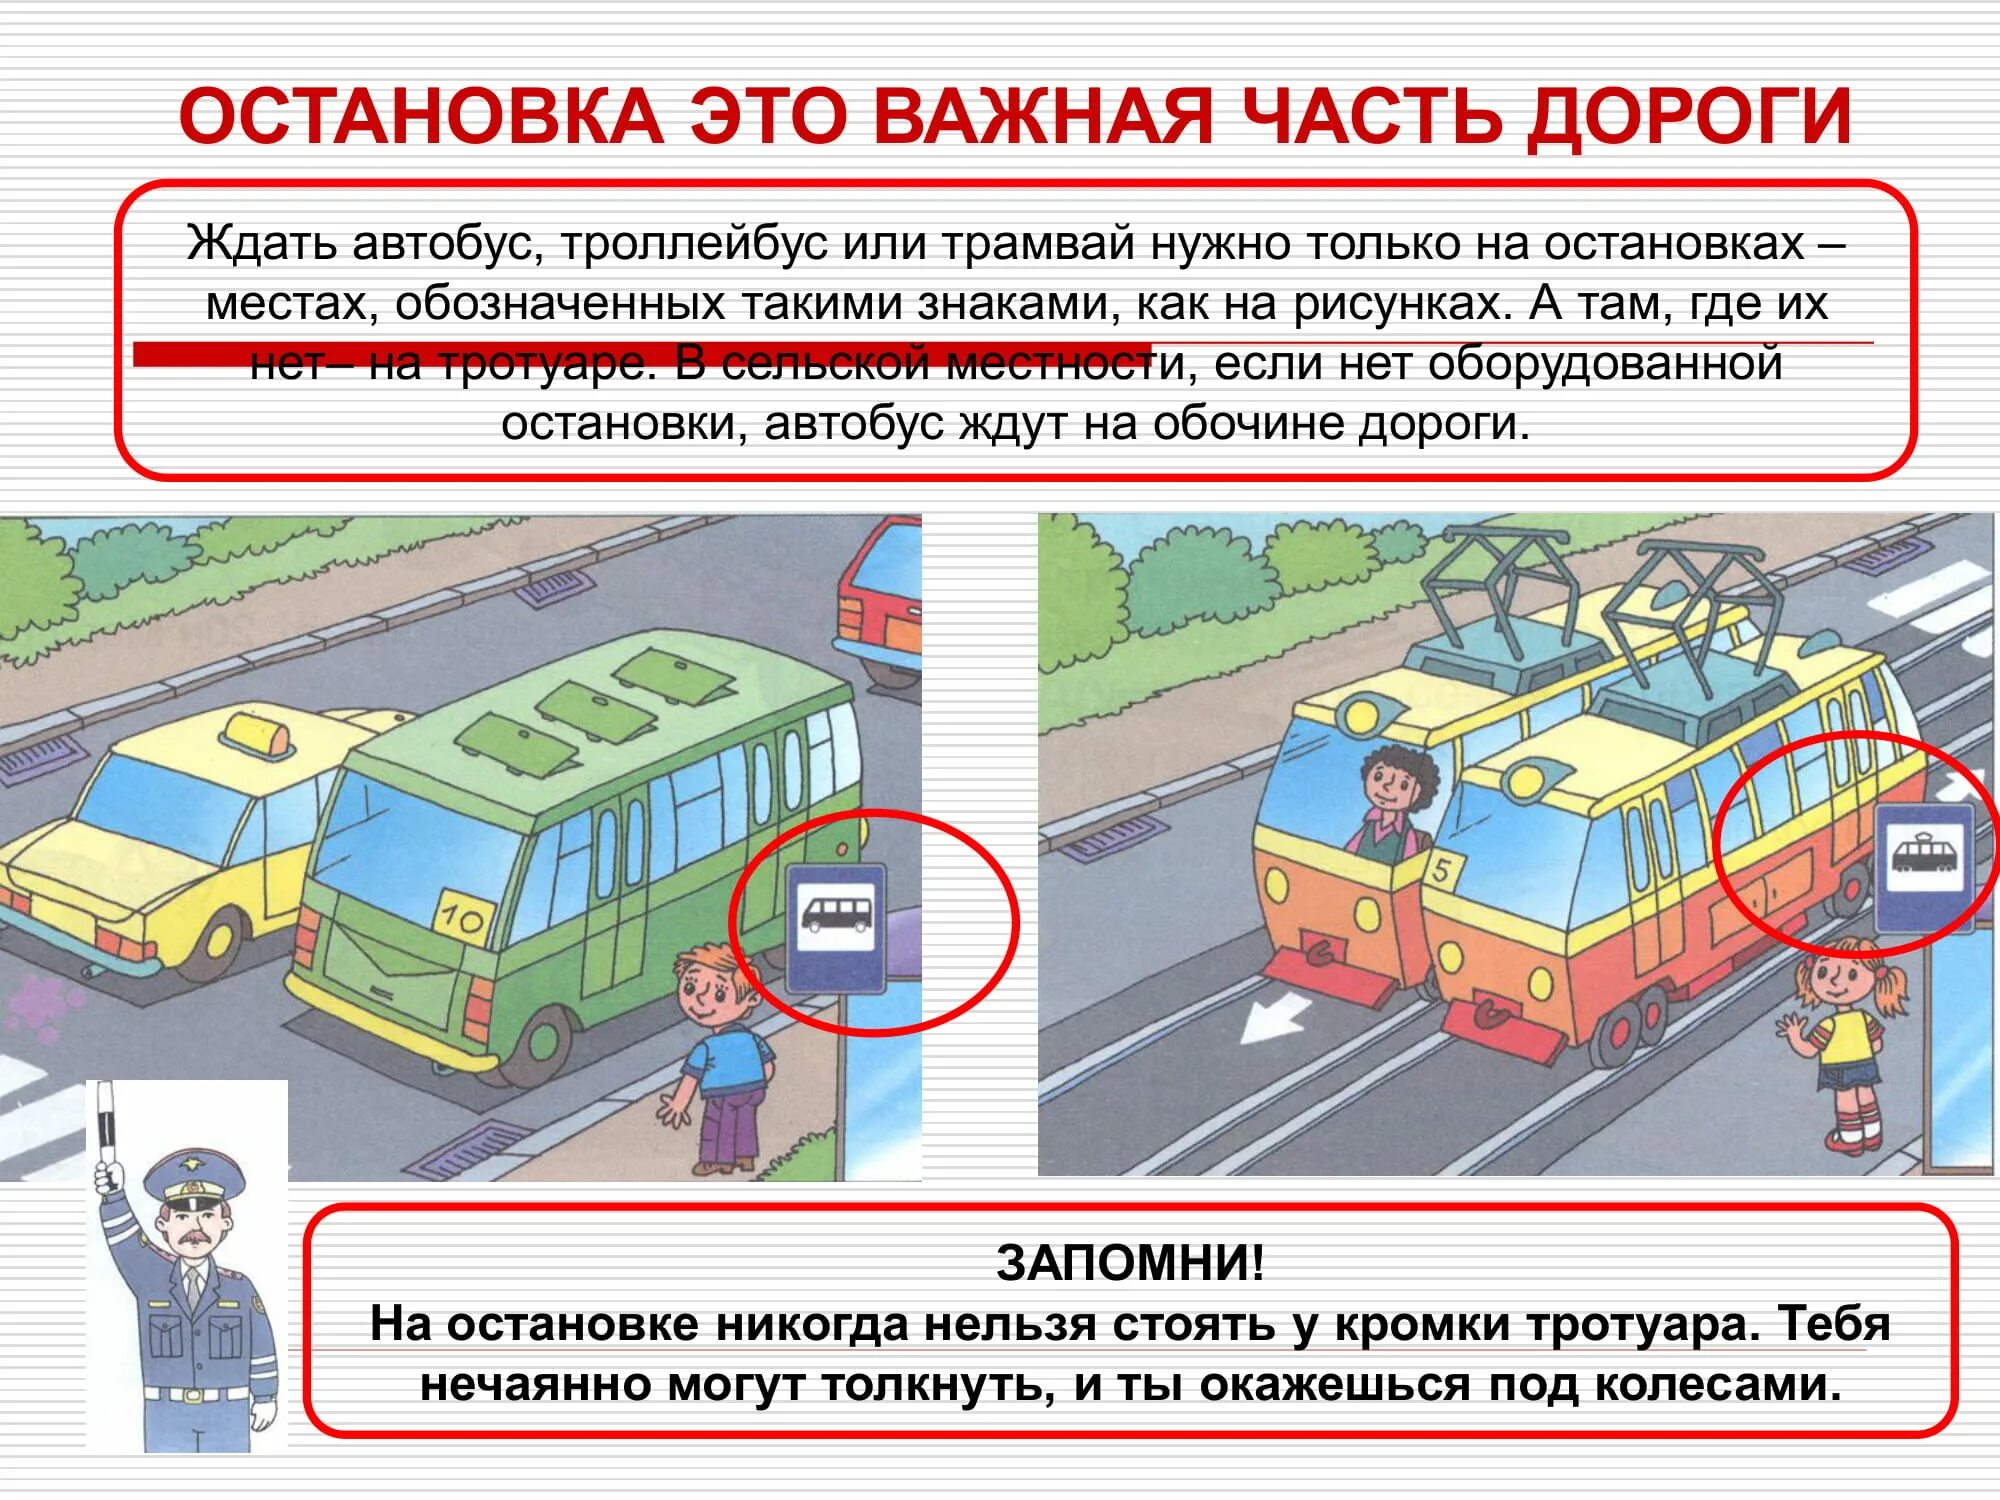 Нужен маршрутный автобус. Правила поведения пассажира на остановке. Правила поведения на автобусной остановке. Поведение на остановке общественного транспорта. Безопасность пассажиров в транспорте.